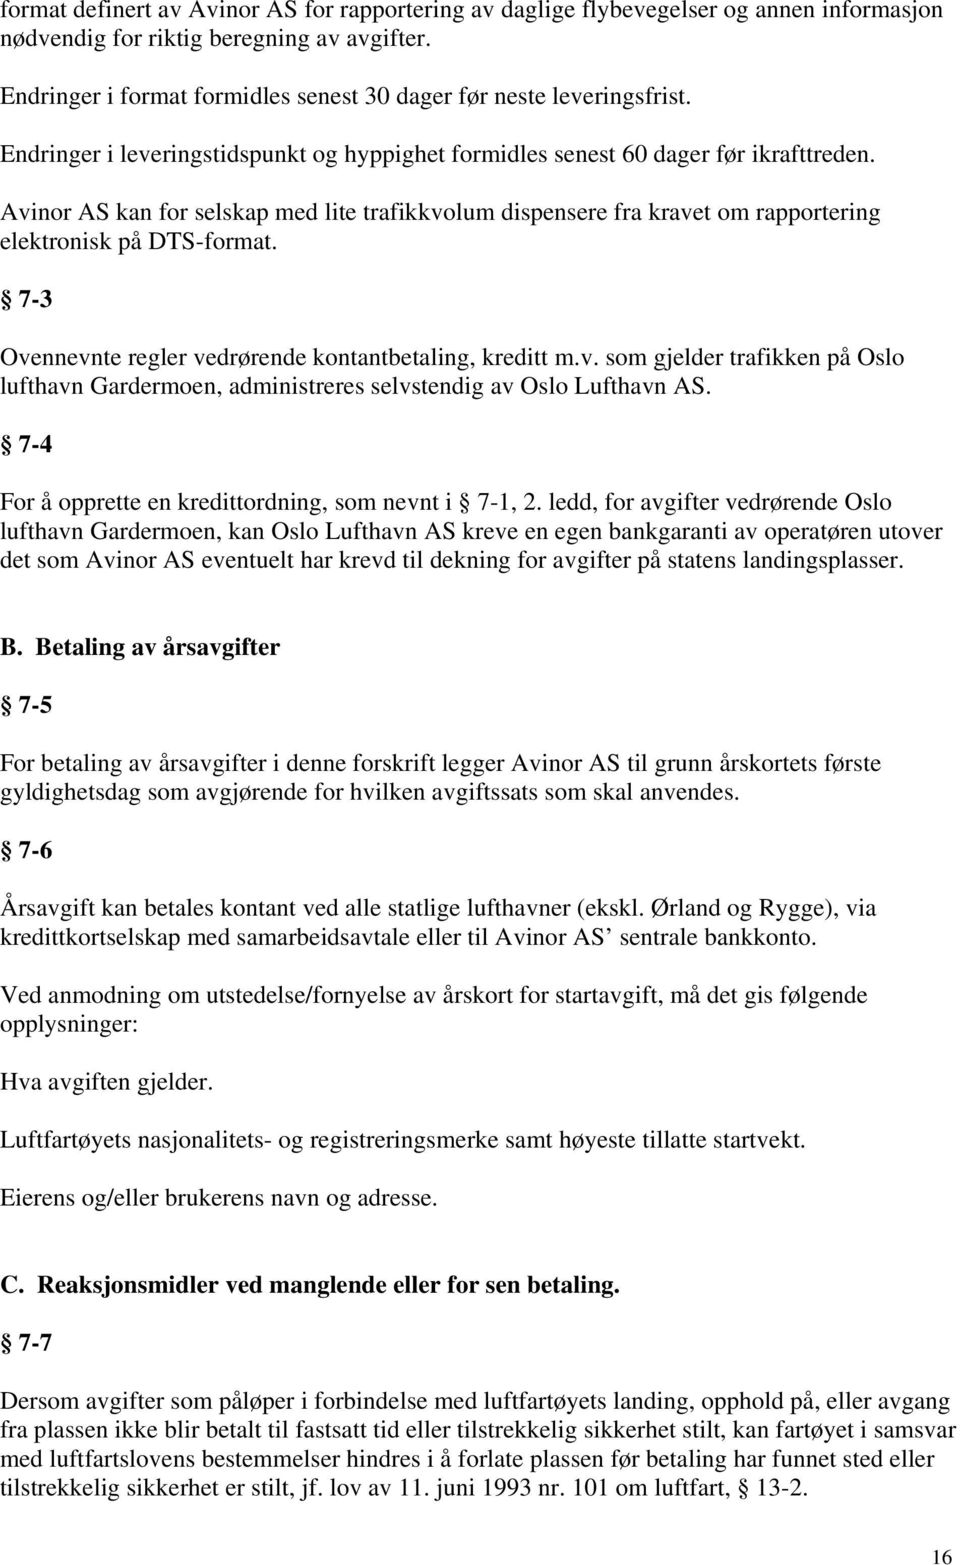 Avinor AS kan for selskap med lite trafikkvolum dispensere fra kravet om rapportering elektronisk på DTS-format. 7-3 Ovennevnte regler vedrørende kontantbetaling, kreditt m.v. som gjelder trafikken på Oslo lufthavn Gardermoen, administreres selvstendig av Oslo Lufthavn AS.